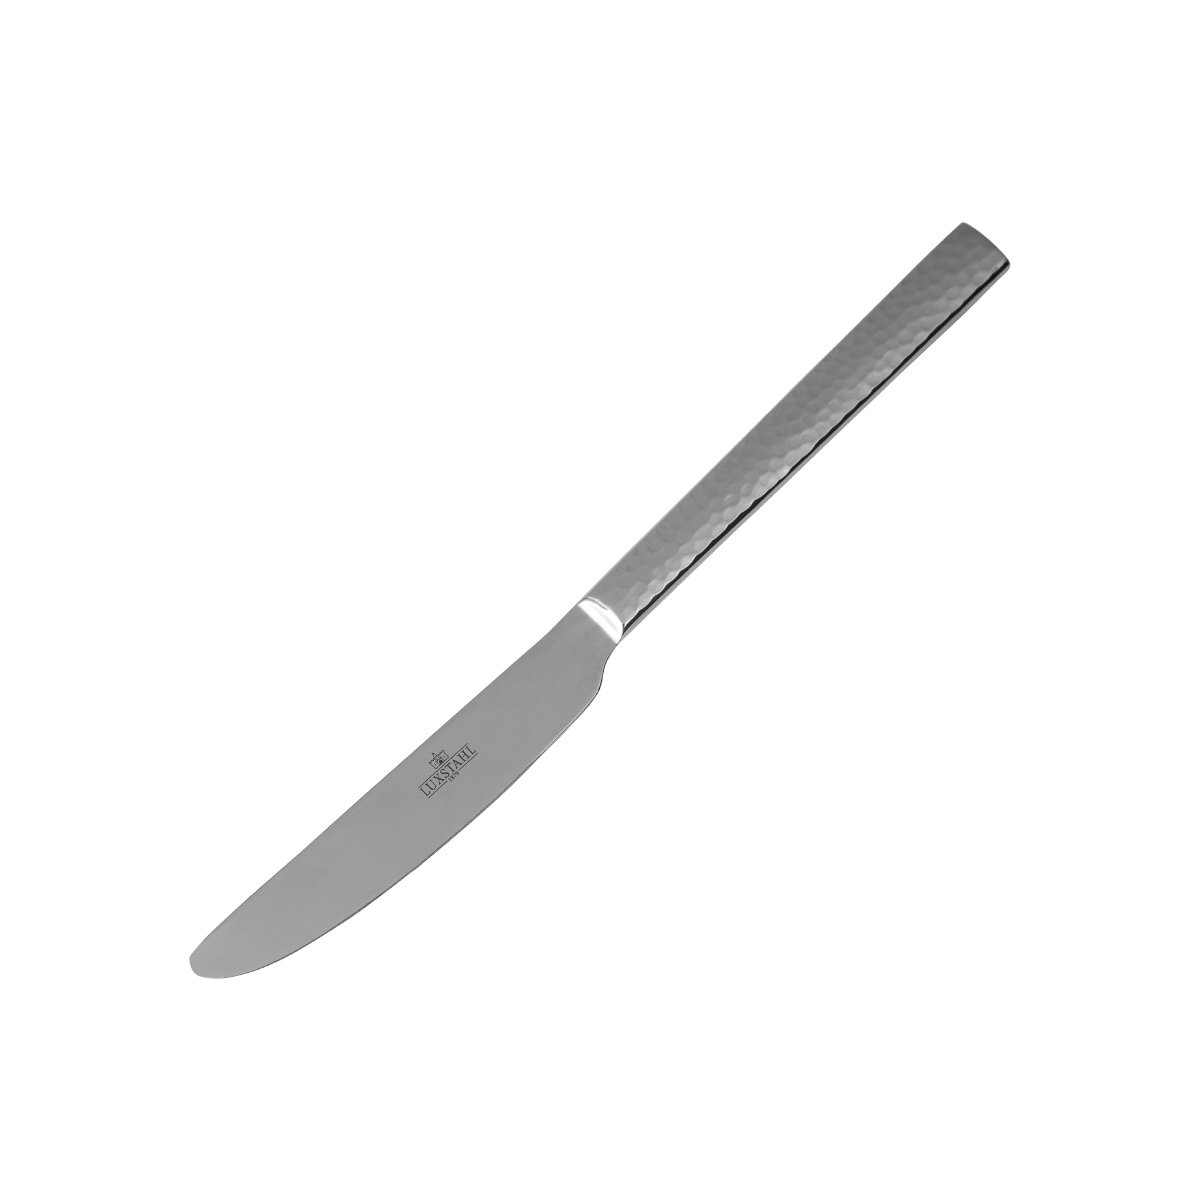 Набор столовых ножей Luxstahl Serena, 2 шт набор столовых ножей luxstahl frankfurt 23 см 2 шт